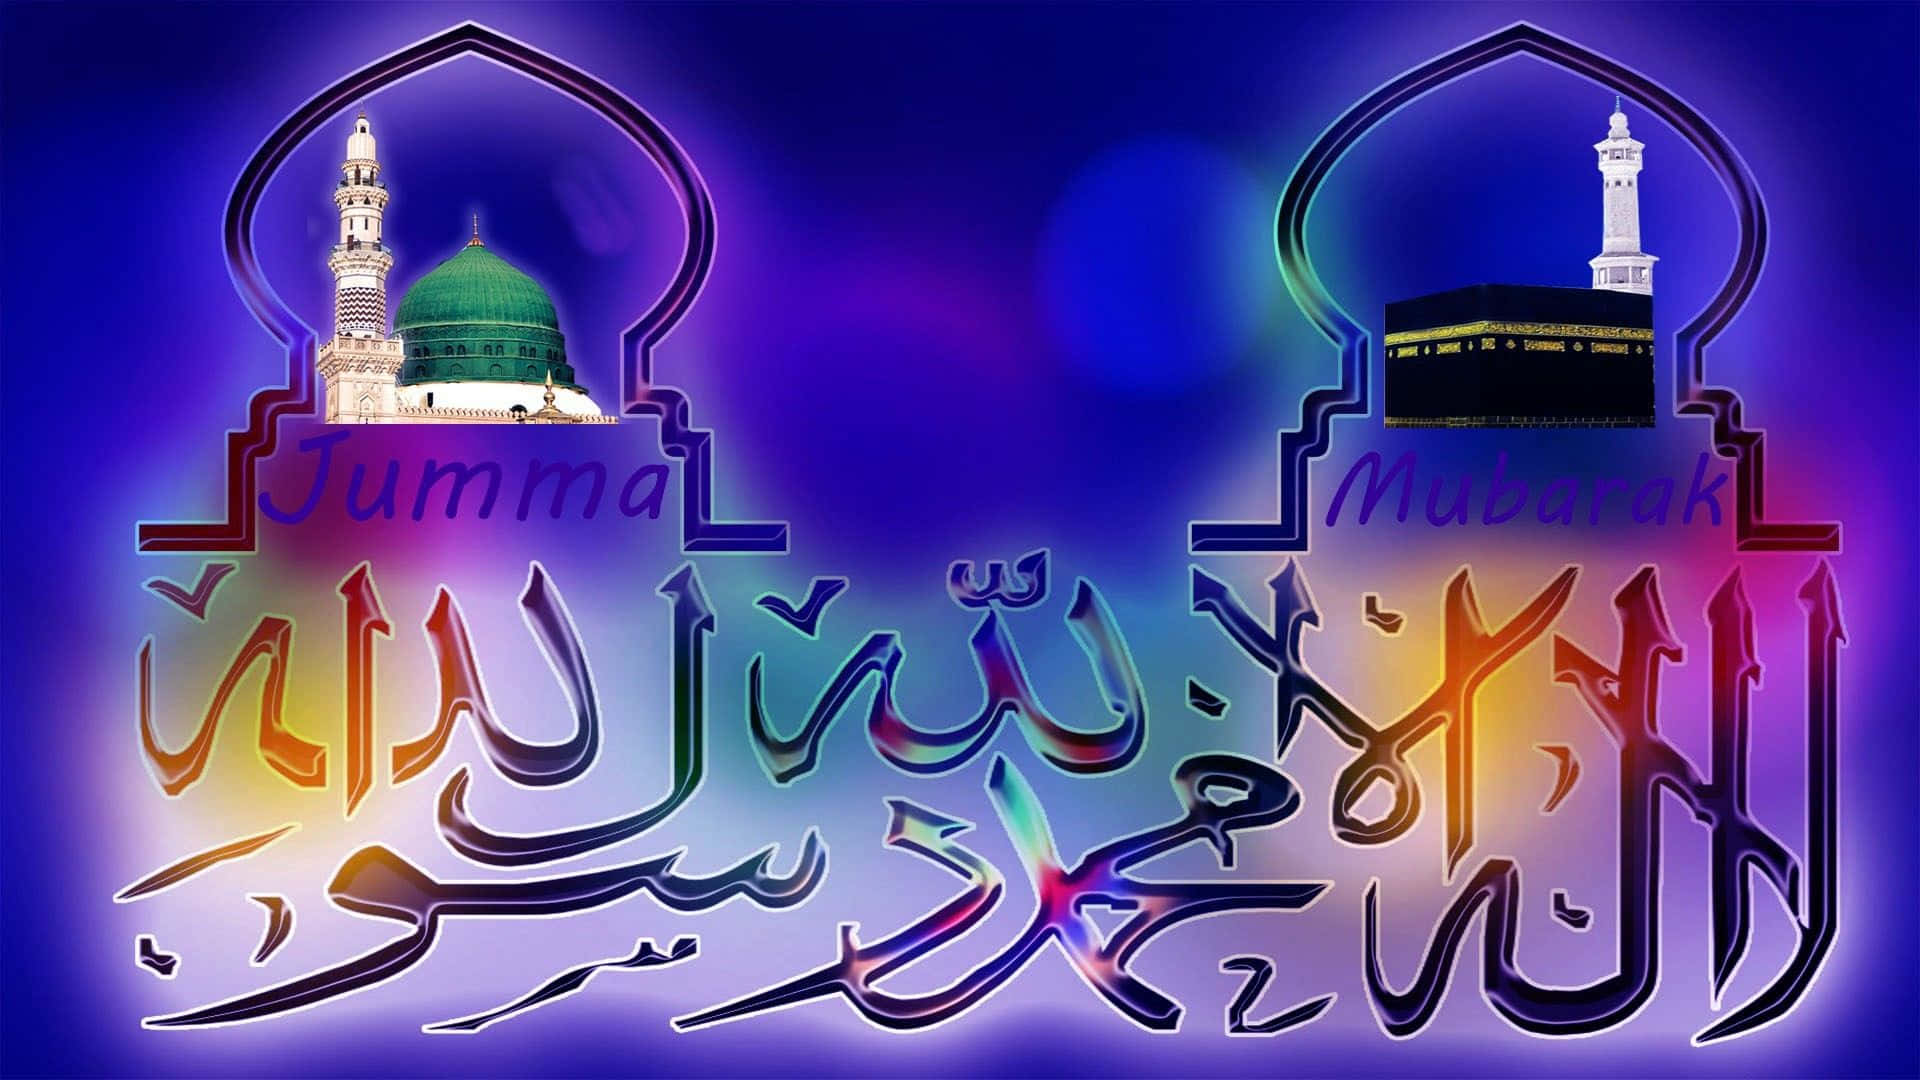 Radiant Jumma Mubarak Wishes with Elegant Calligraphy